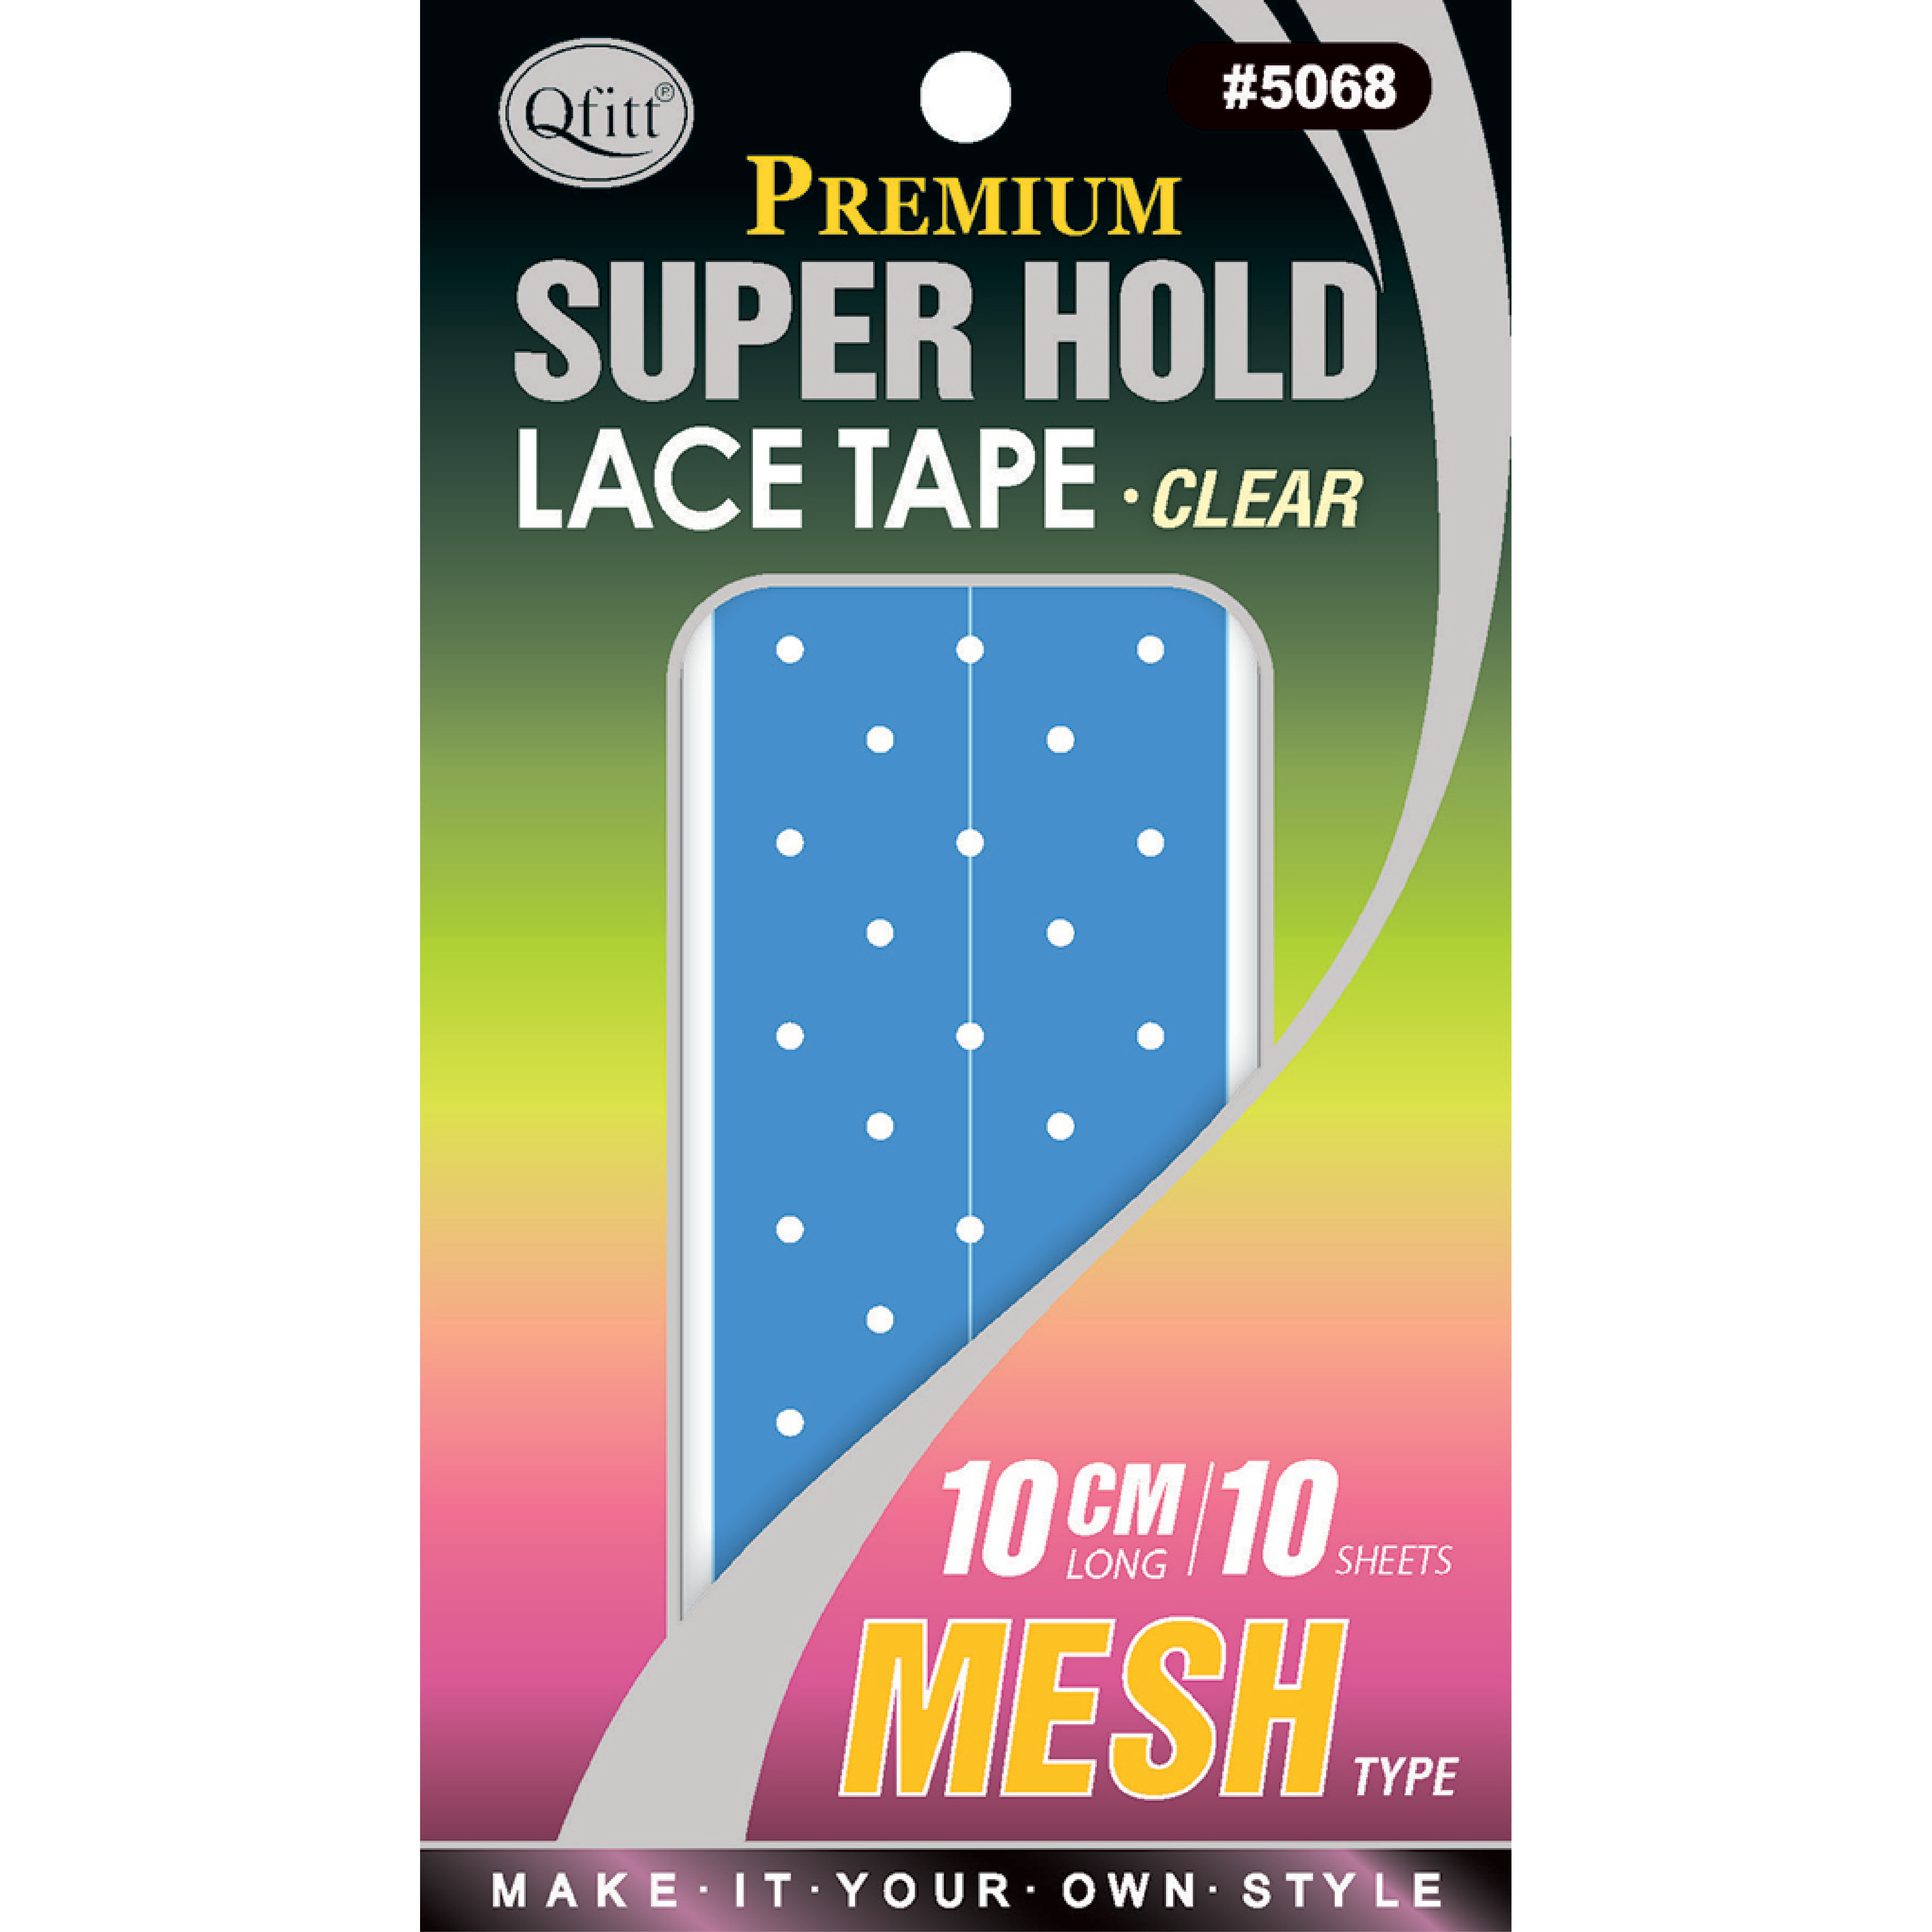 MESH SUPER HOLD LACE TAPE - 10PCS – Qfitt